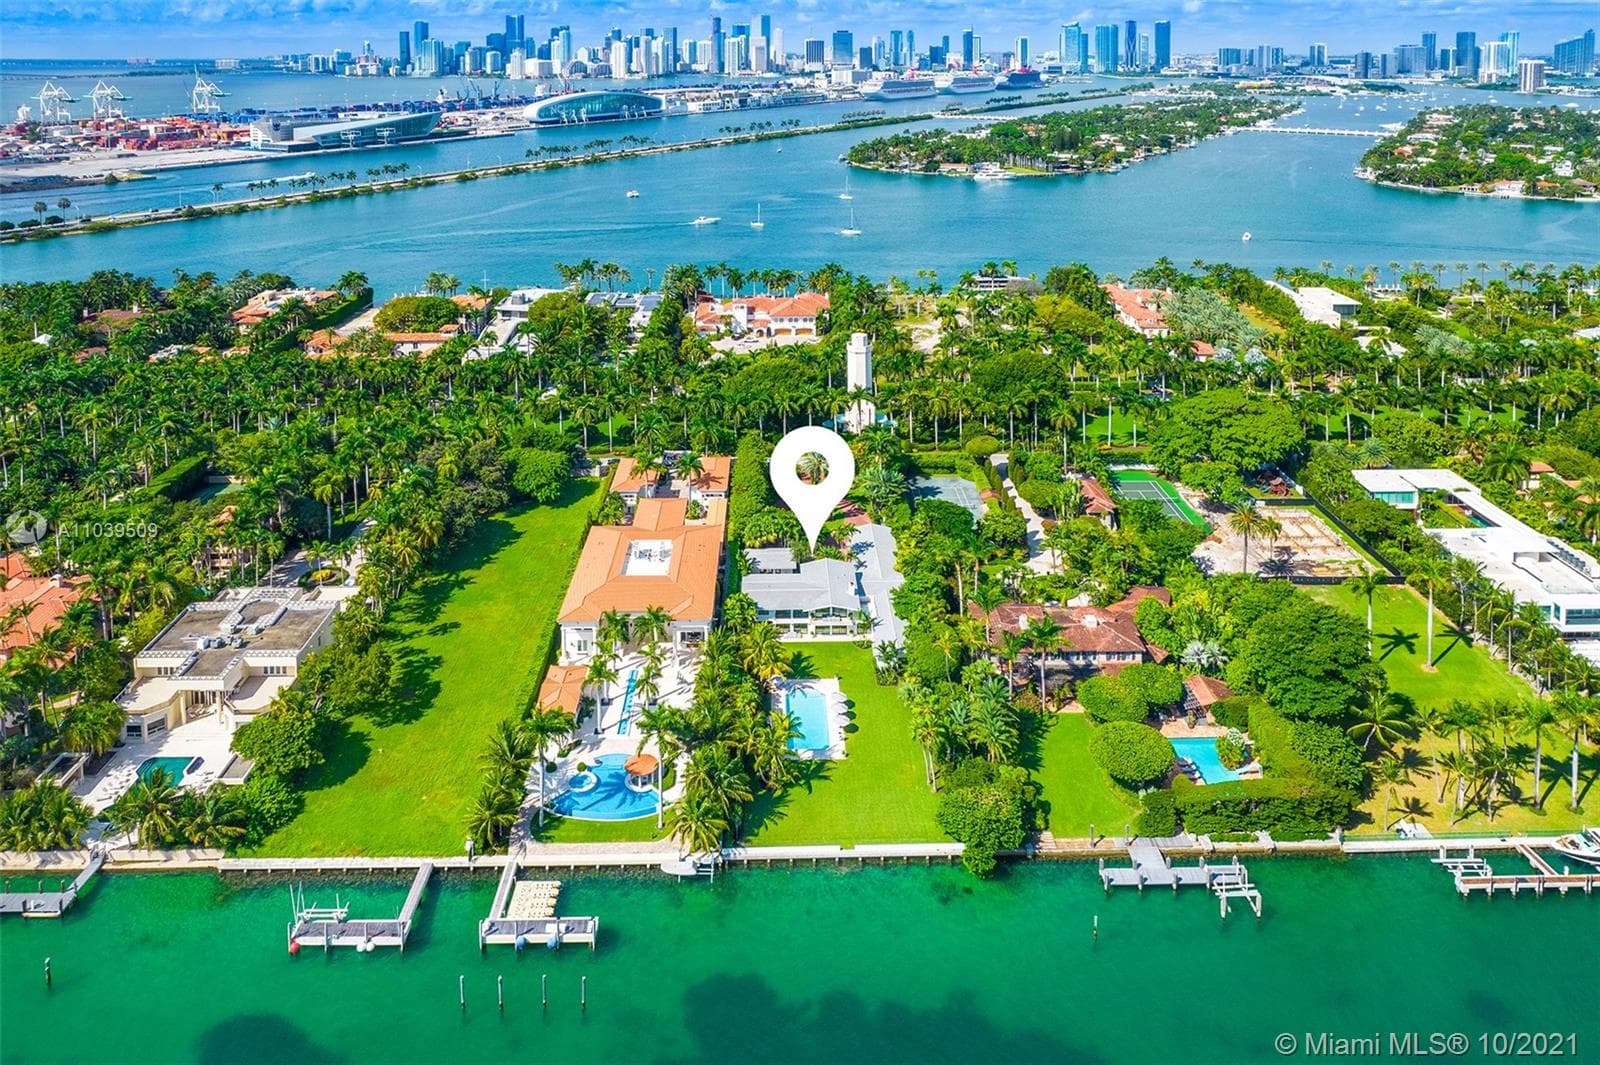 9 Bedroom Condominium For Sale Miami Beach Lp09826 79ad070be11c800.jpg